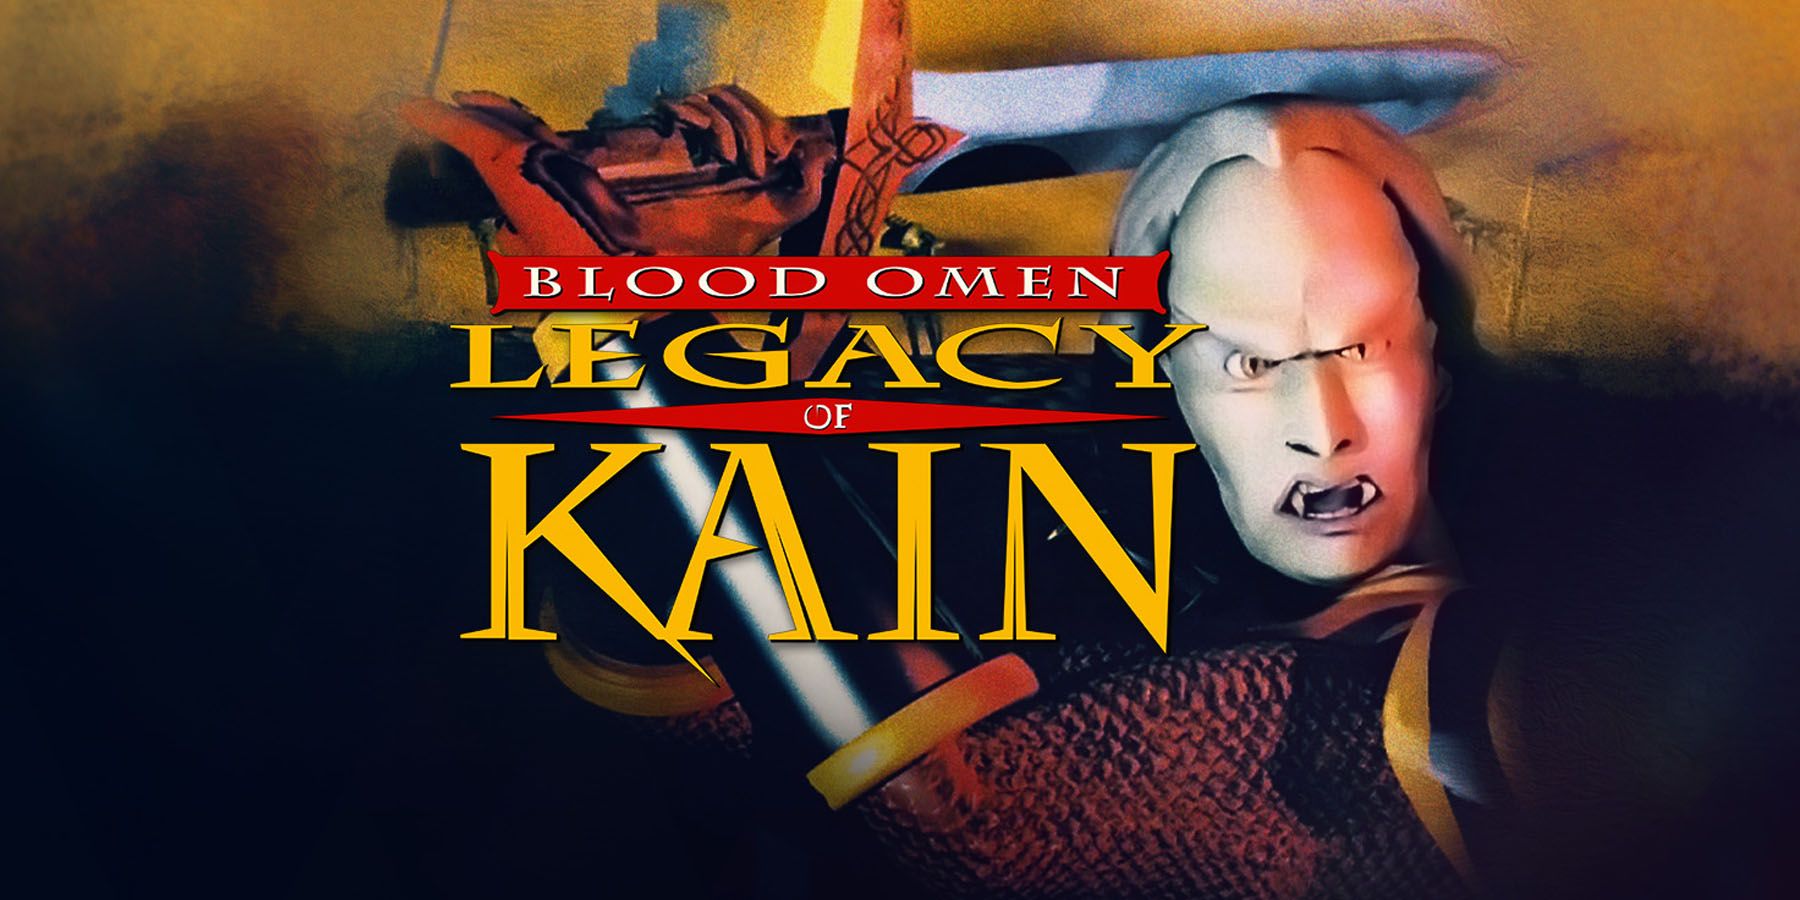 Blood Omen: Legacy of Kain erhält moderne PC-Veröffentlichung 25 Jahre später